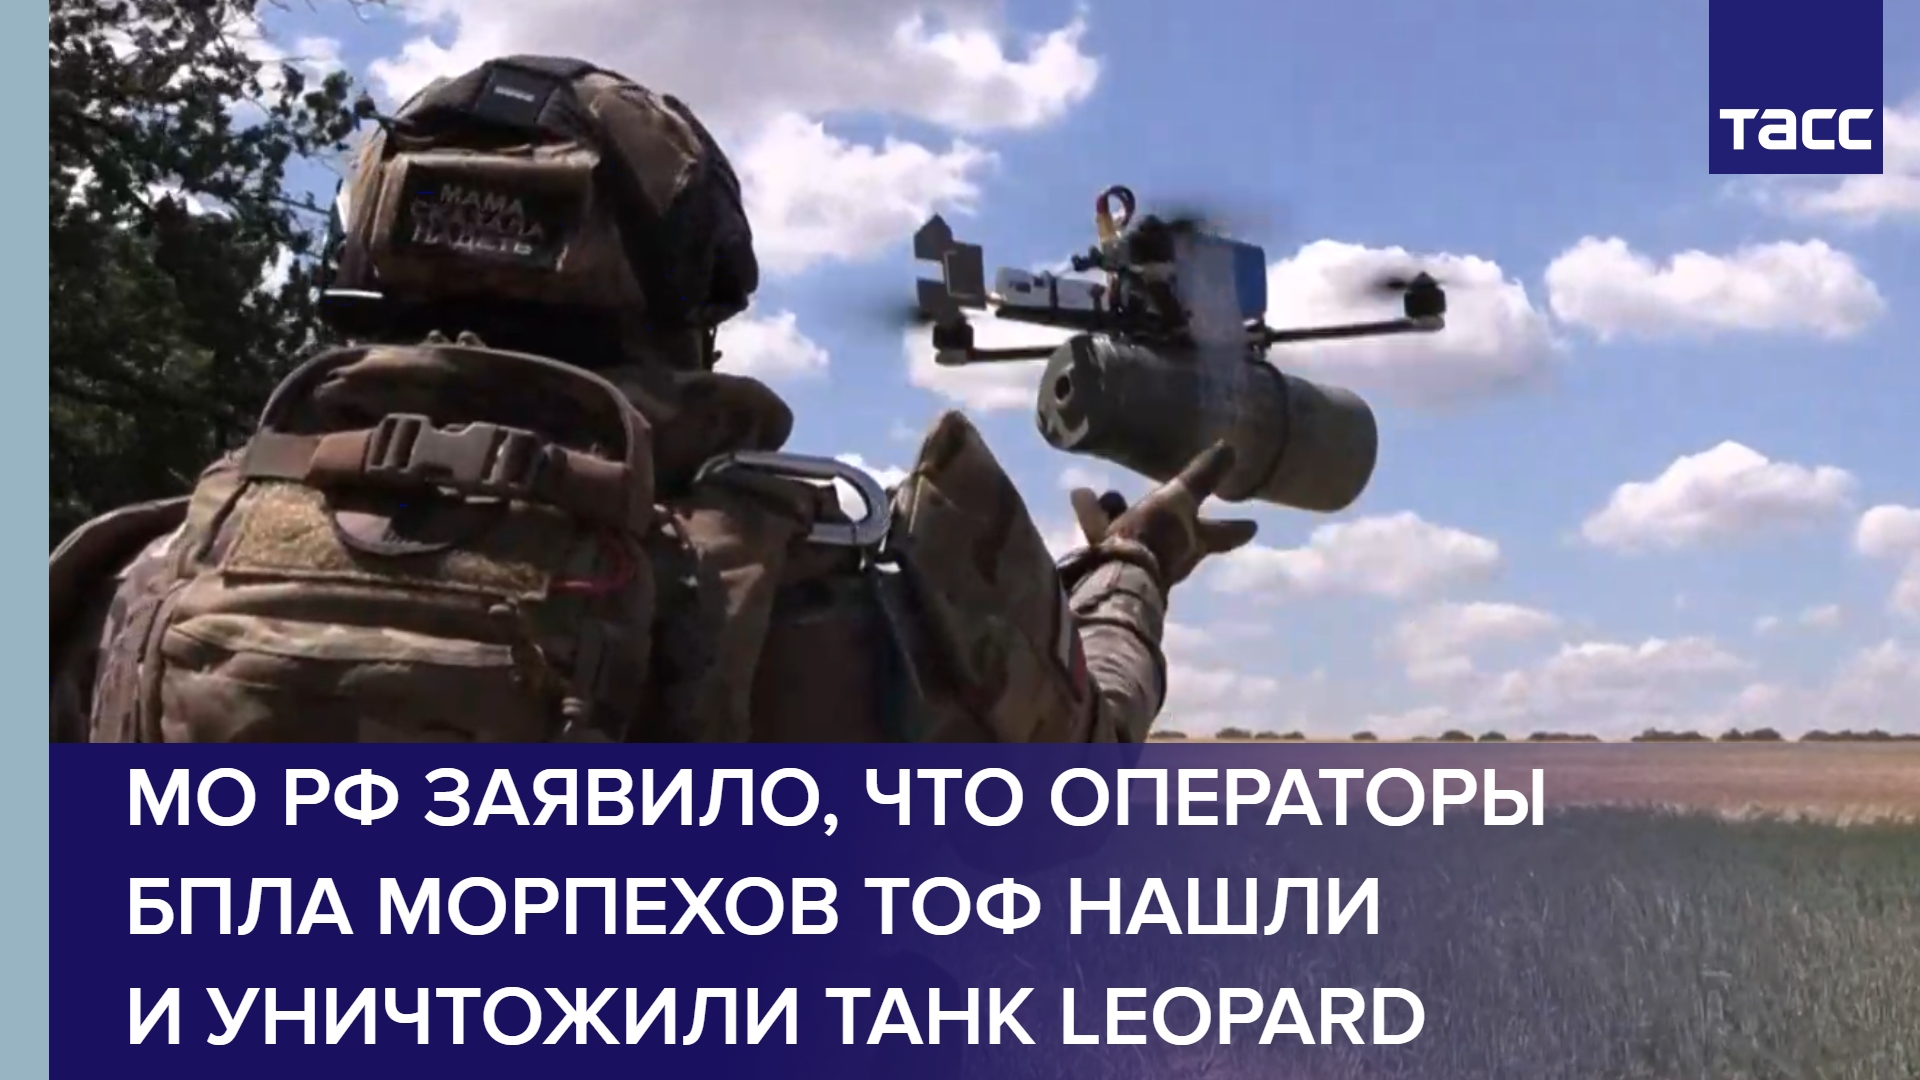 МО РФ заявило, что операторы БПЛА морпехов ТОФ нашли и уничтожили танк Leopard